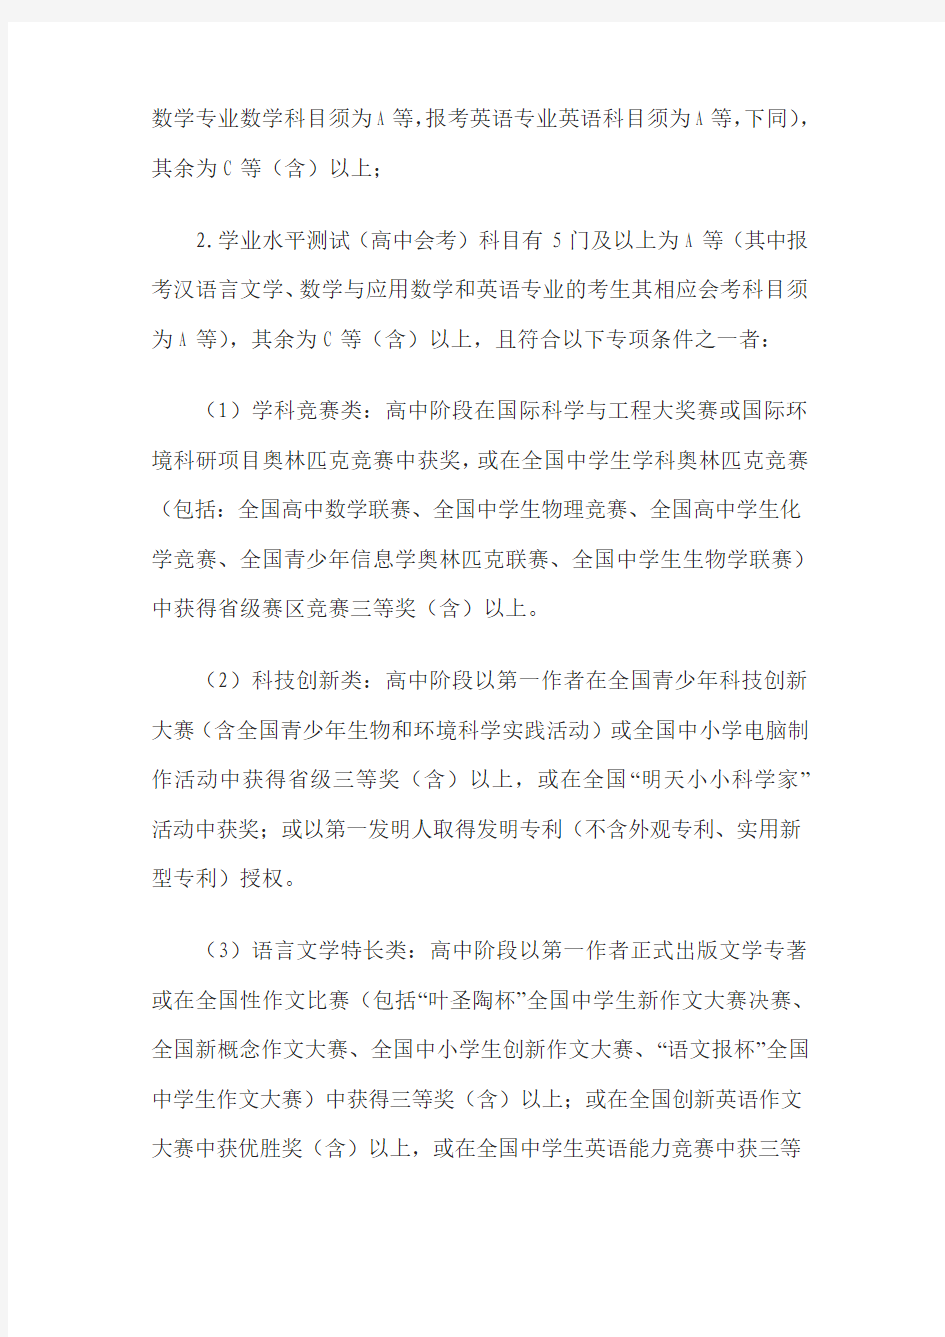 2015年浙江师范大学三位一体自主招生要求